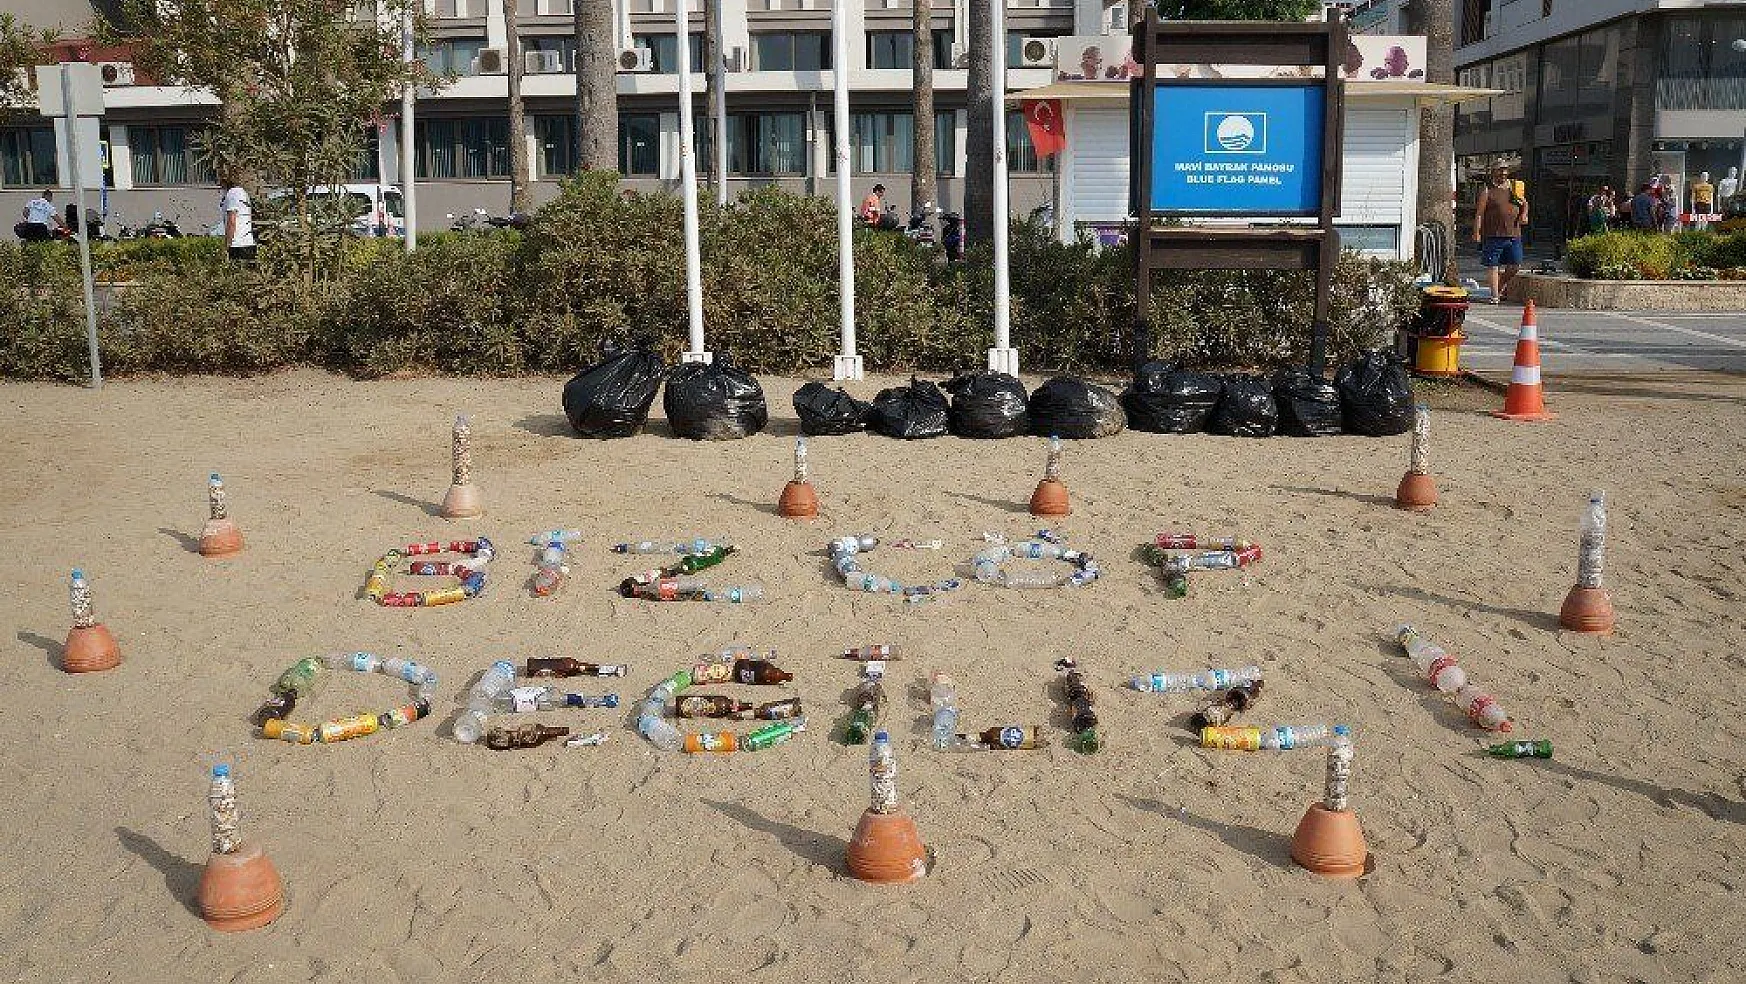 Topladıkları atıklardan 'Biz çöp değiliz' yazıp, plajda sergilediler